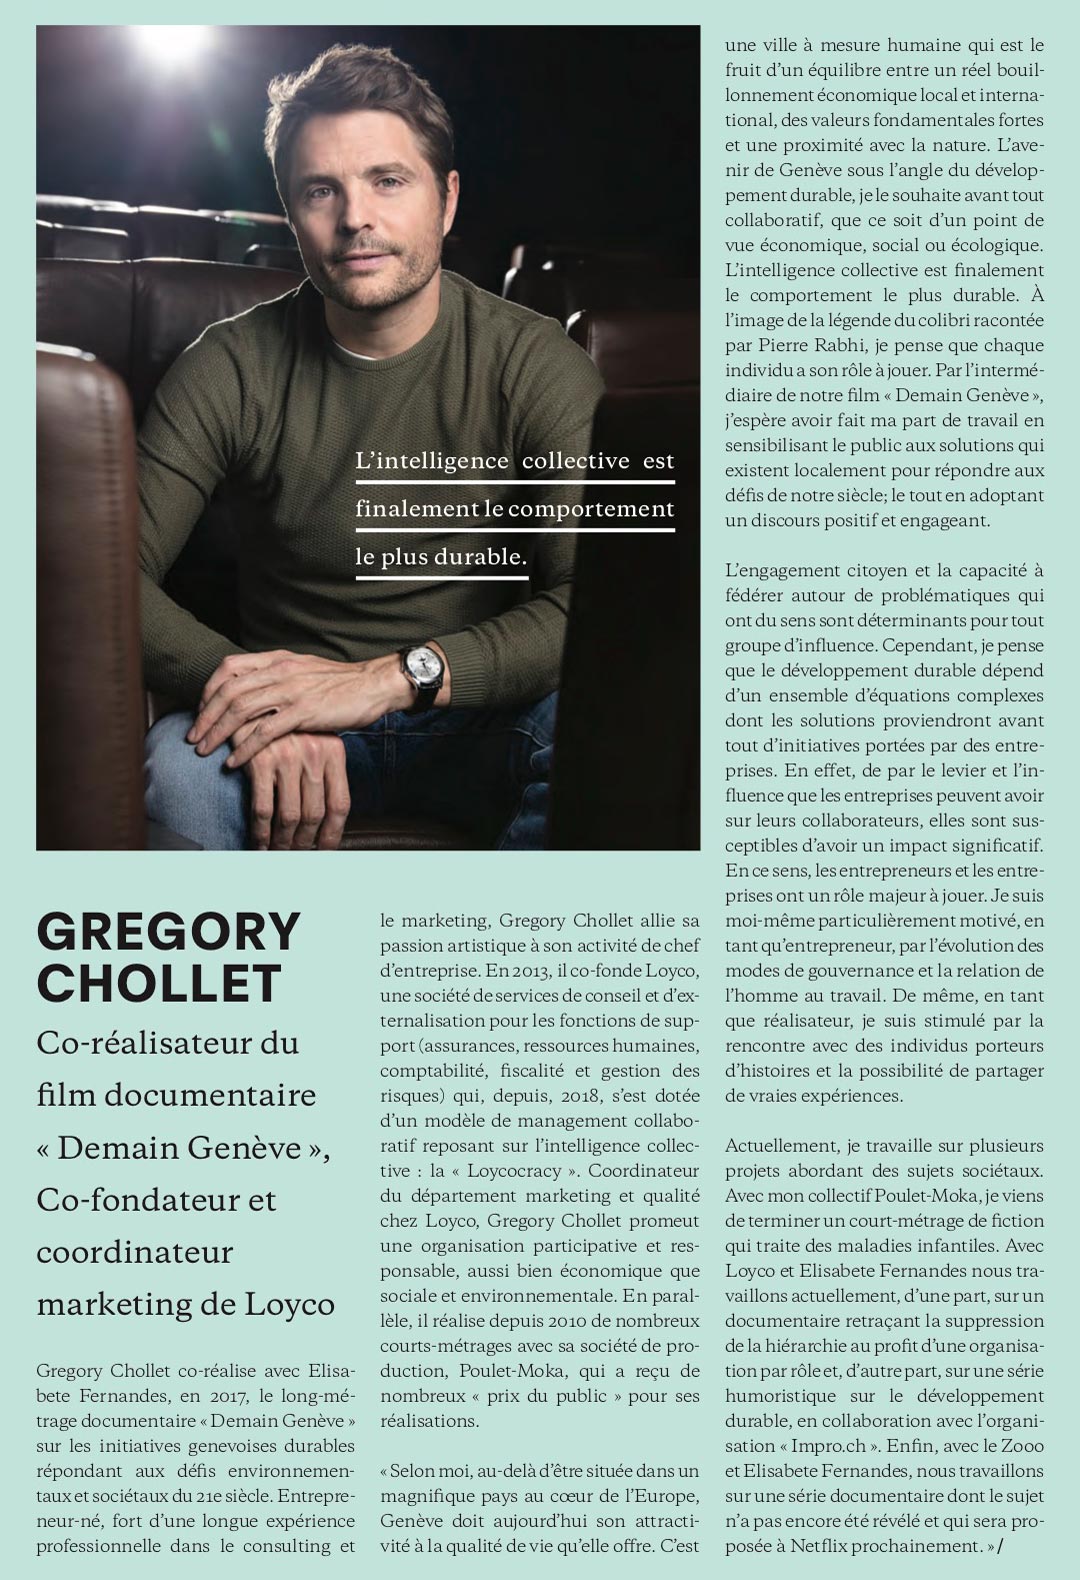 Gregory Chollet est cité par Flat magazine parmi les personnalités qui font Genève.